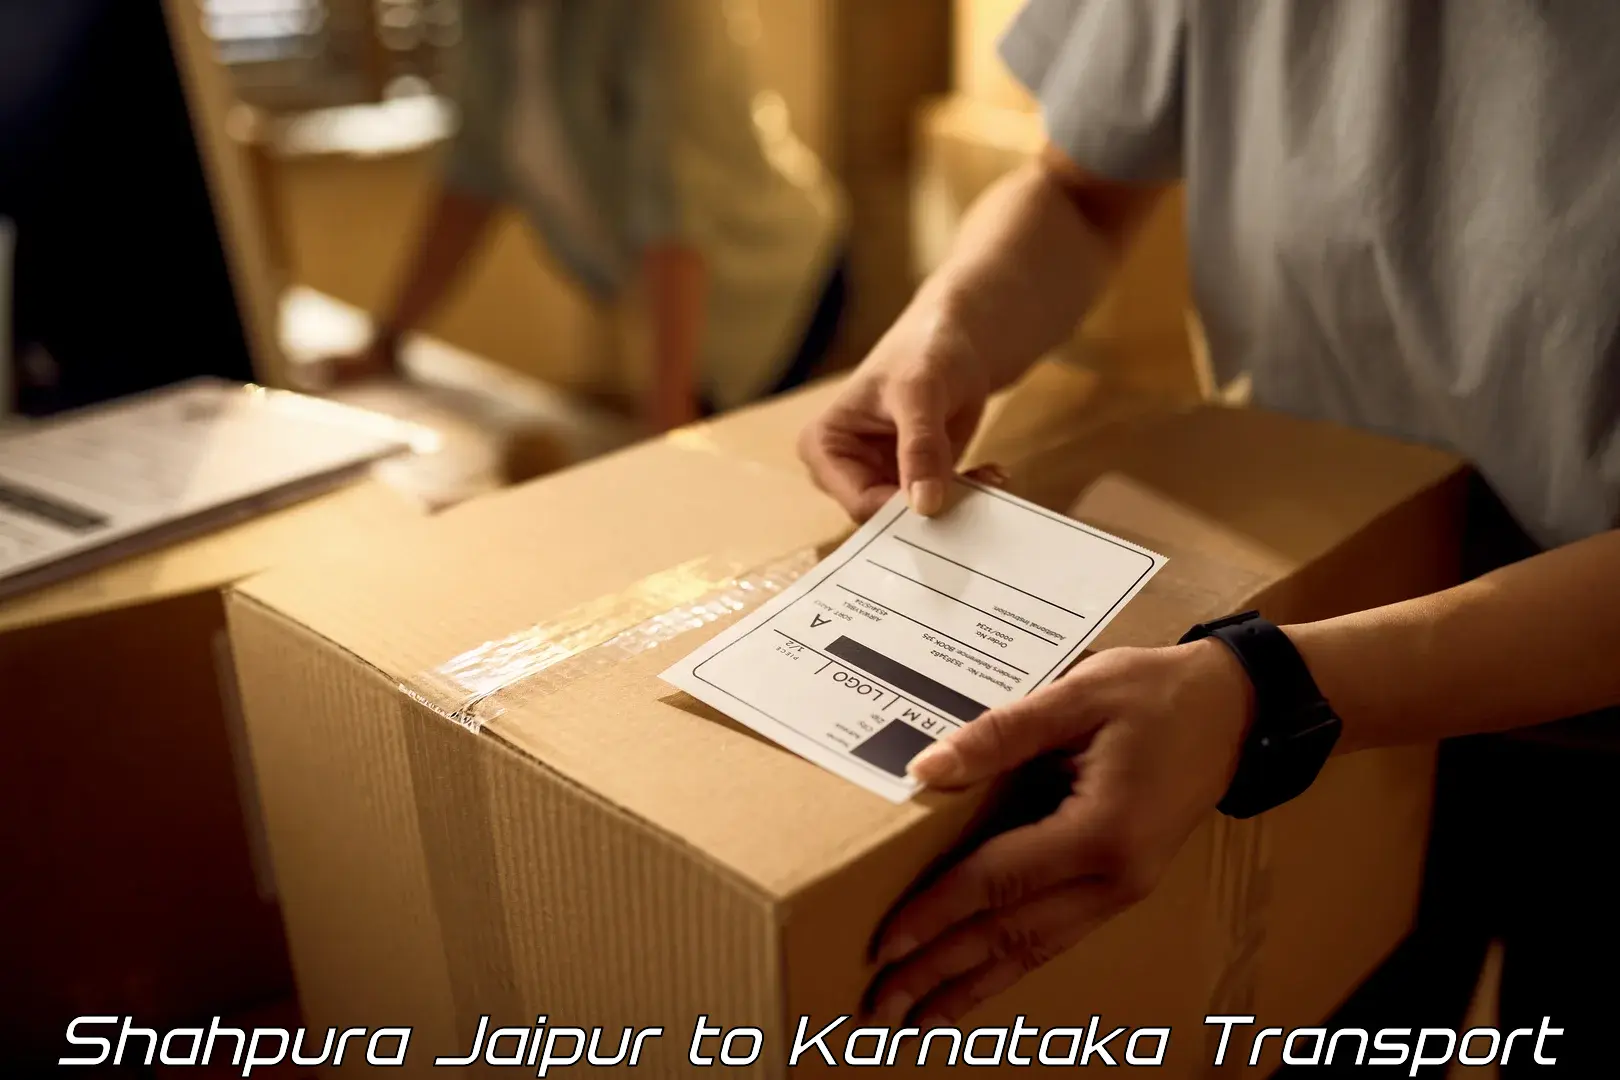 Online transport service Shahpura Jaipur to Kalasa